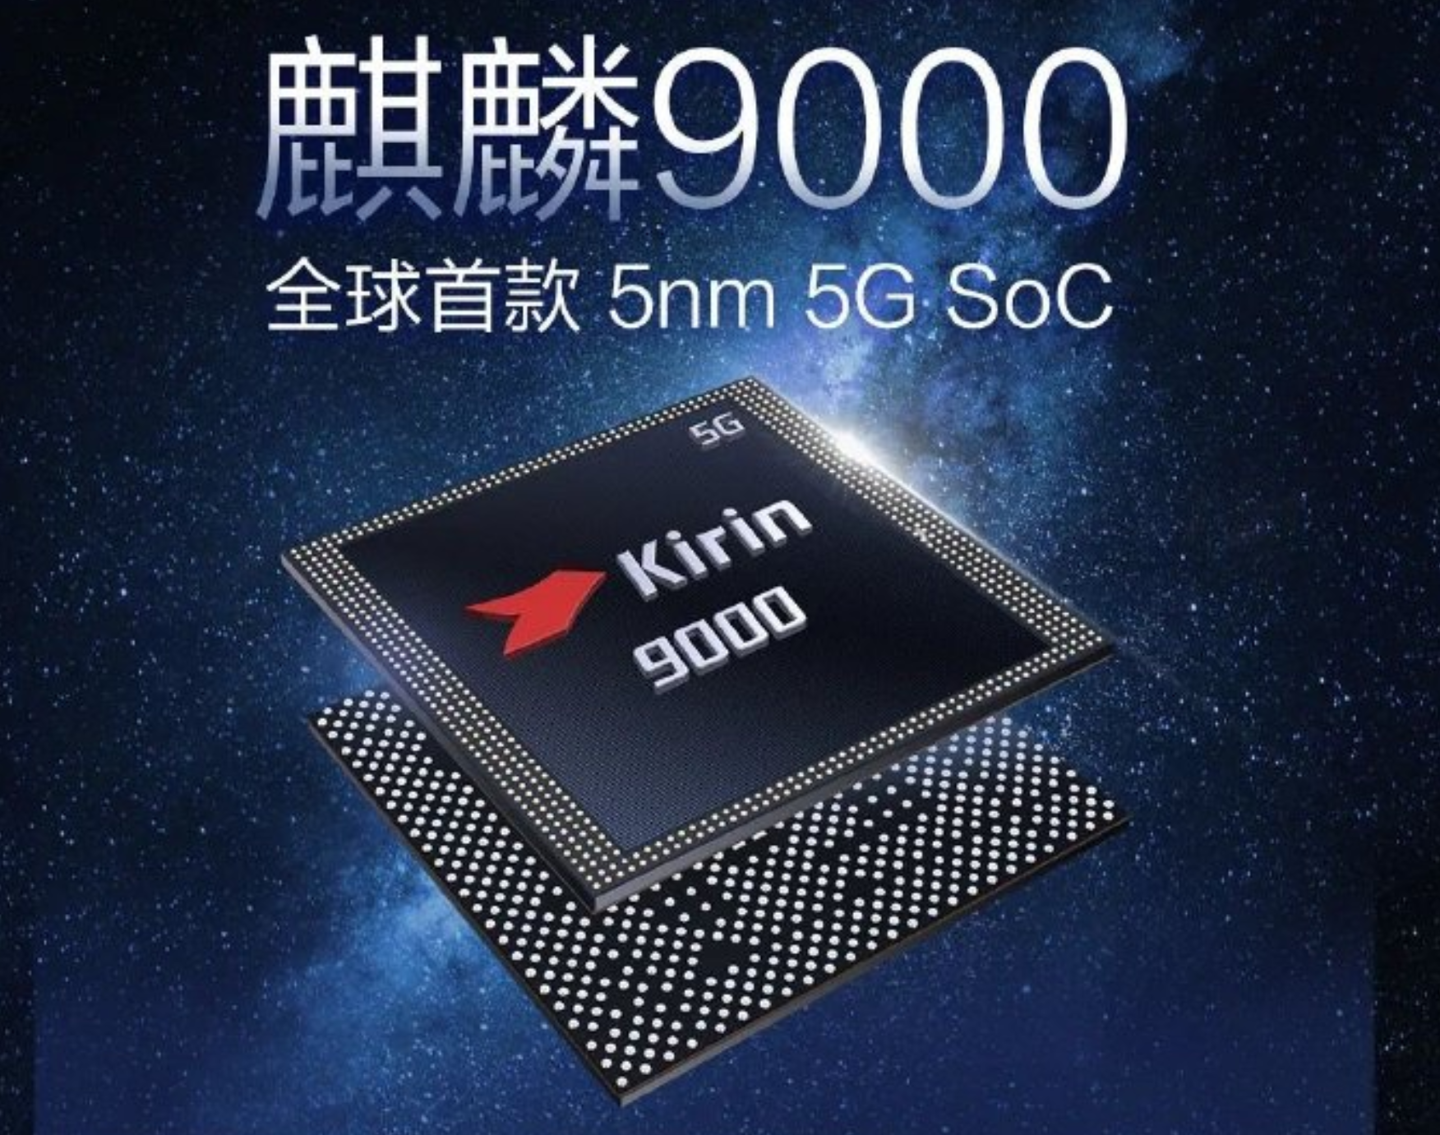 消息称华为还将发布一款麒麟 9000 4G 新手机，明年大多数是骁龙机型，麒麟芯片库存见底